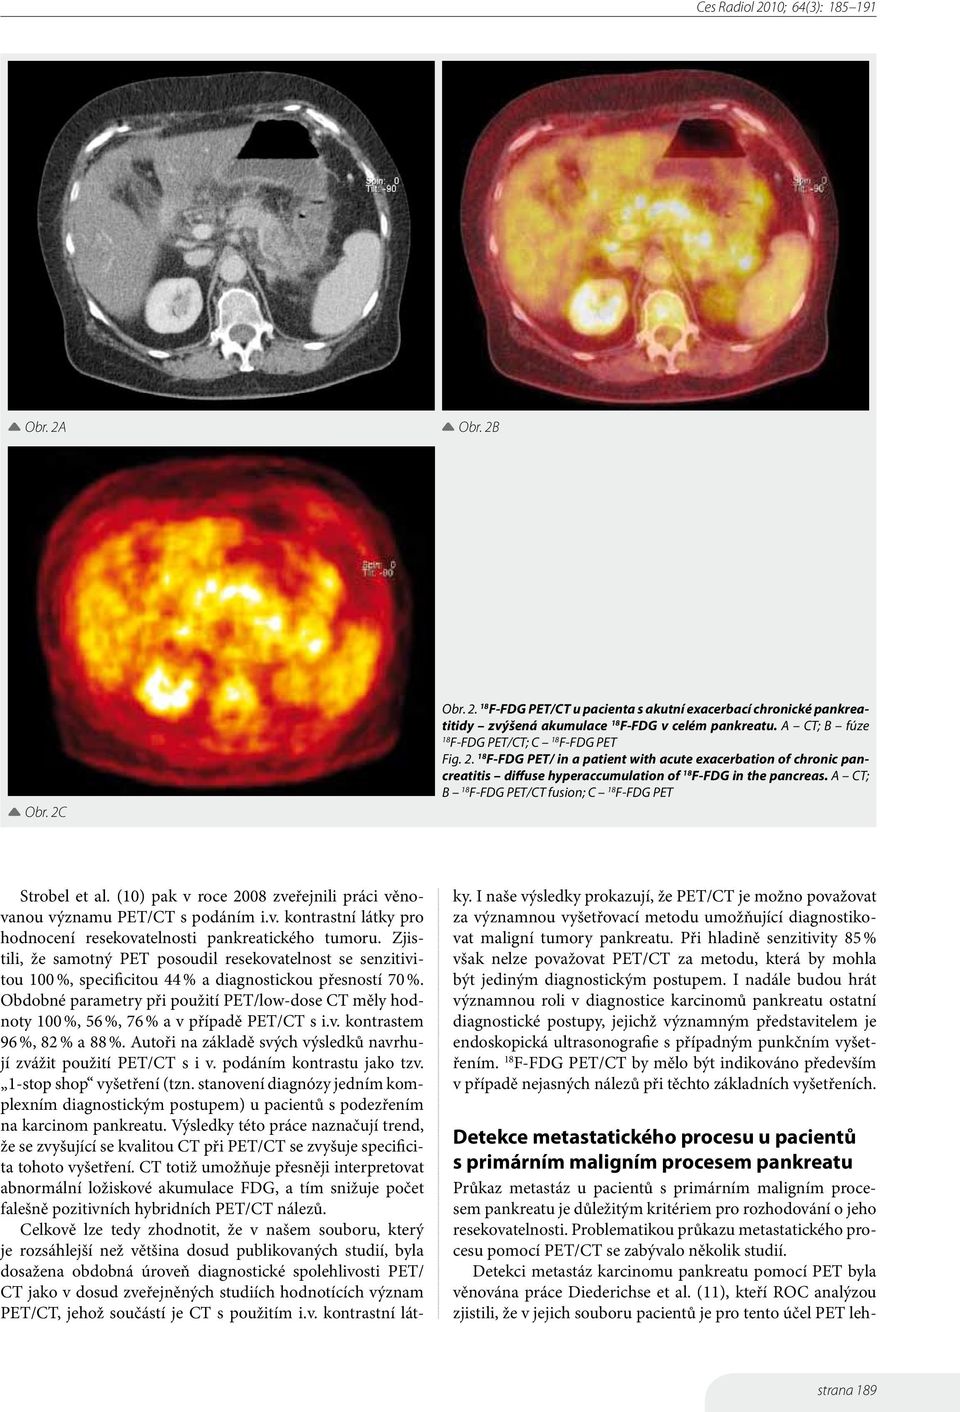 A CT; B F-FDG PET/CT fusion; C F-FDG PET Strobel et al. (10) pak v roce 2008 zveřejnili práci věnovanou významu PET/CT s podáním i.v. kontrastní látky pro hodnocení resekovatelnosti pankreatického tumoru.